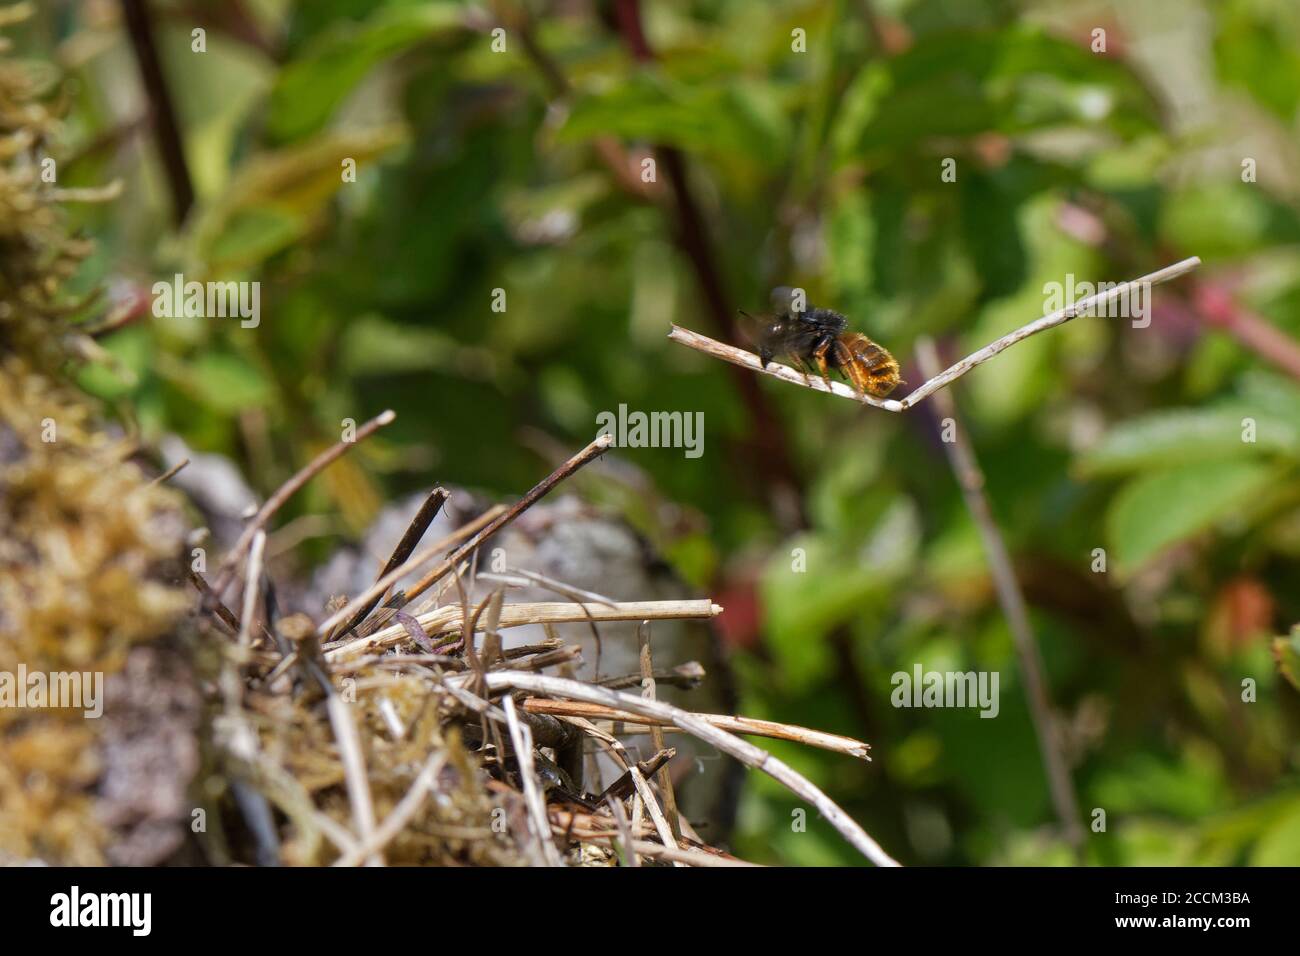 L'abeille mason bicolore (Osmia bicolor) survolant avec un bâton pour ajouter à une pile de végétation camouflant son nid dans une coquille d'escargot à lèvres brunes, Royaume-Uni. Banque D'Images